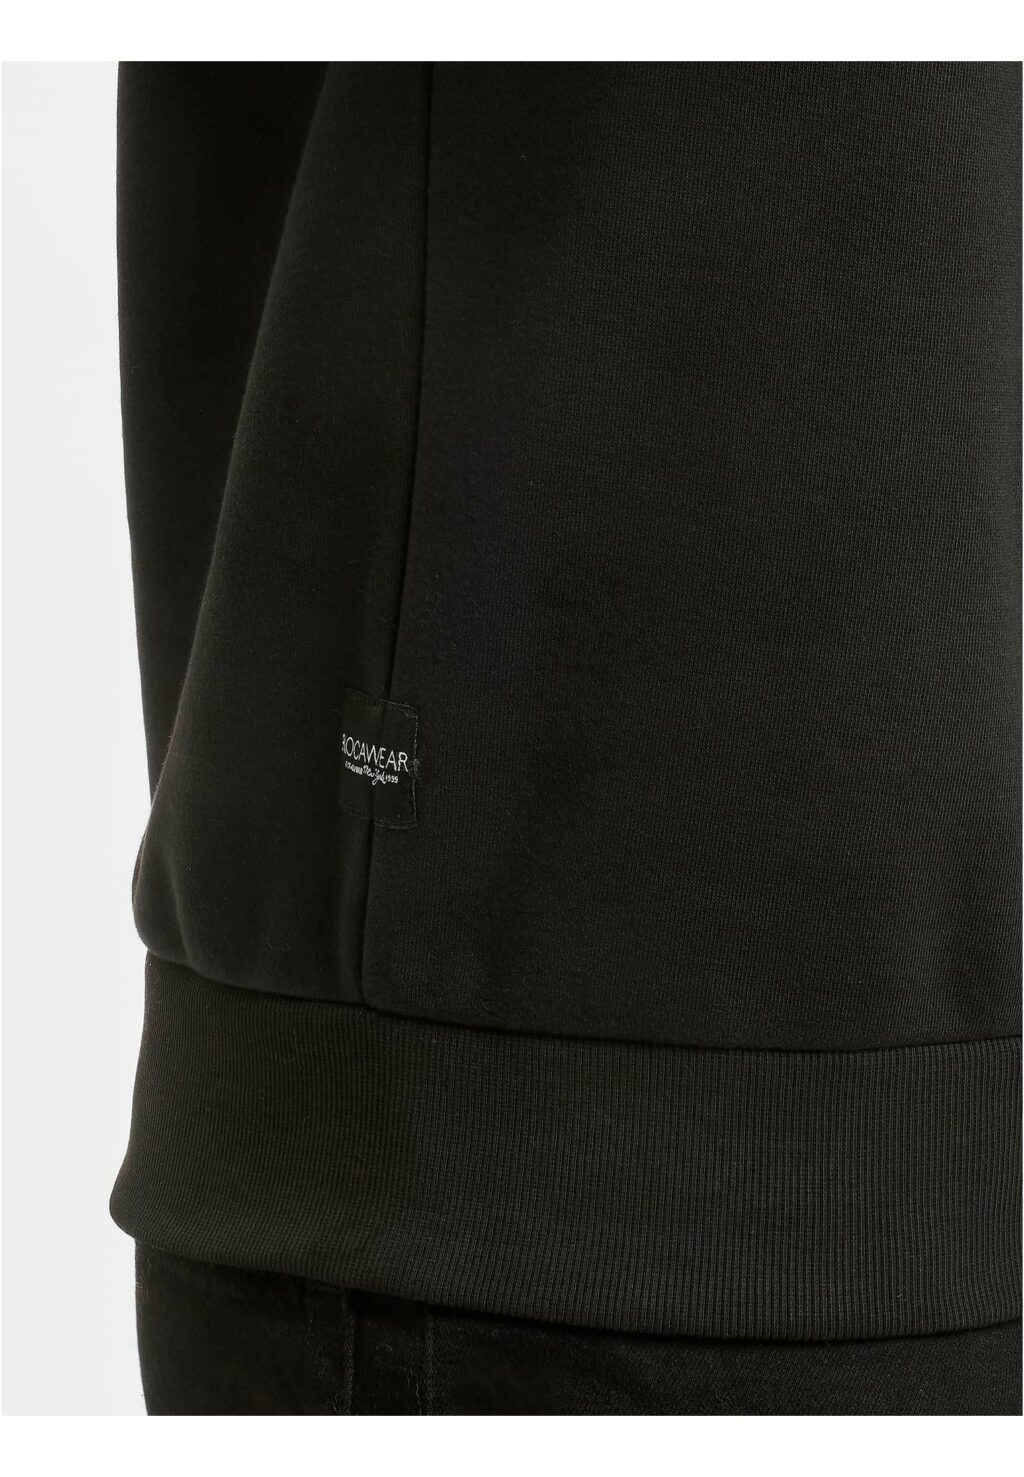 Rocawear Printed Sweatshir black/lime RWCN005